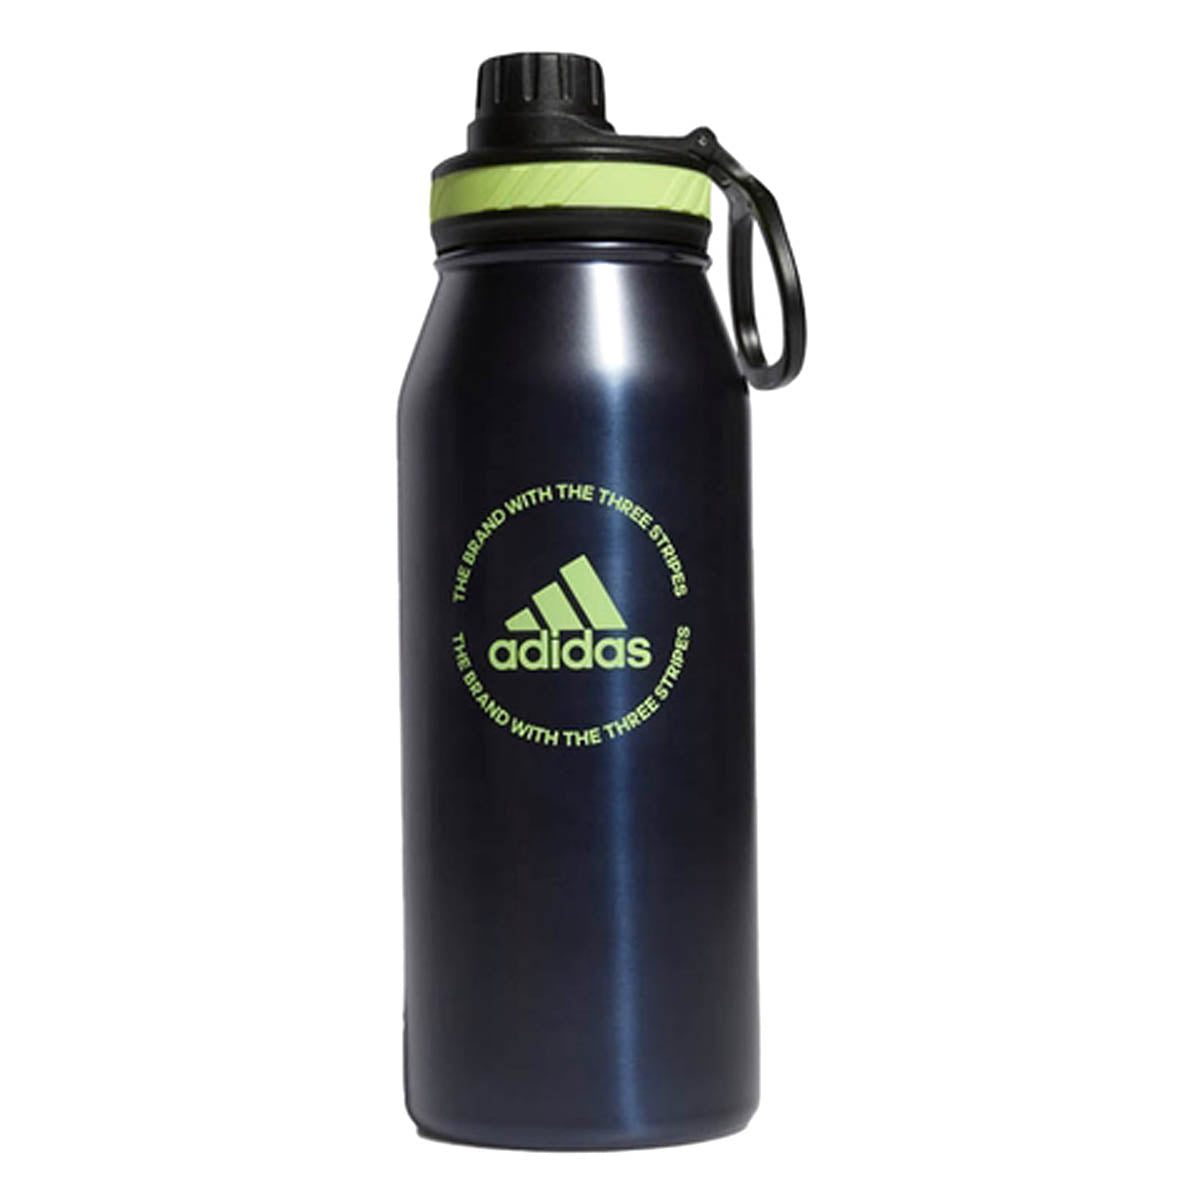 https://goalkicksoccer.com/cdn/shop/products/adidas-steel-1l-metal-bottle-5154321-water-bottles-adidas-osfa-legend-ink-bluepulse-lime-greenblack-442654.jpg?v=1659676030